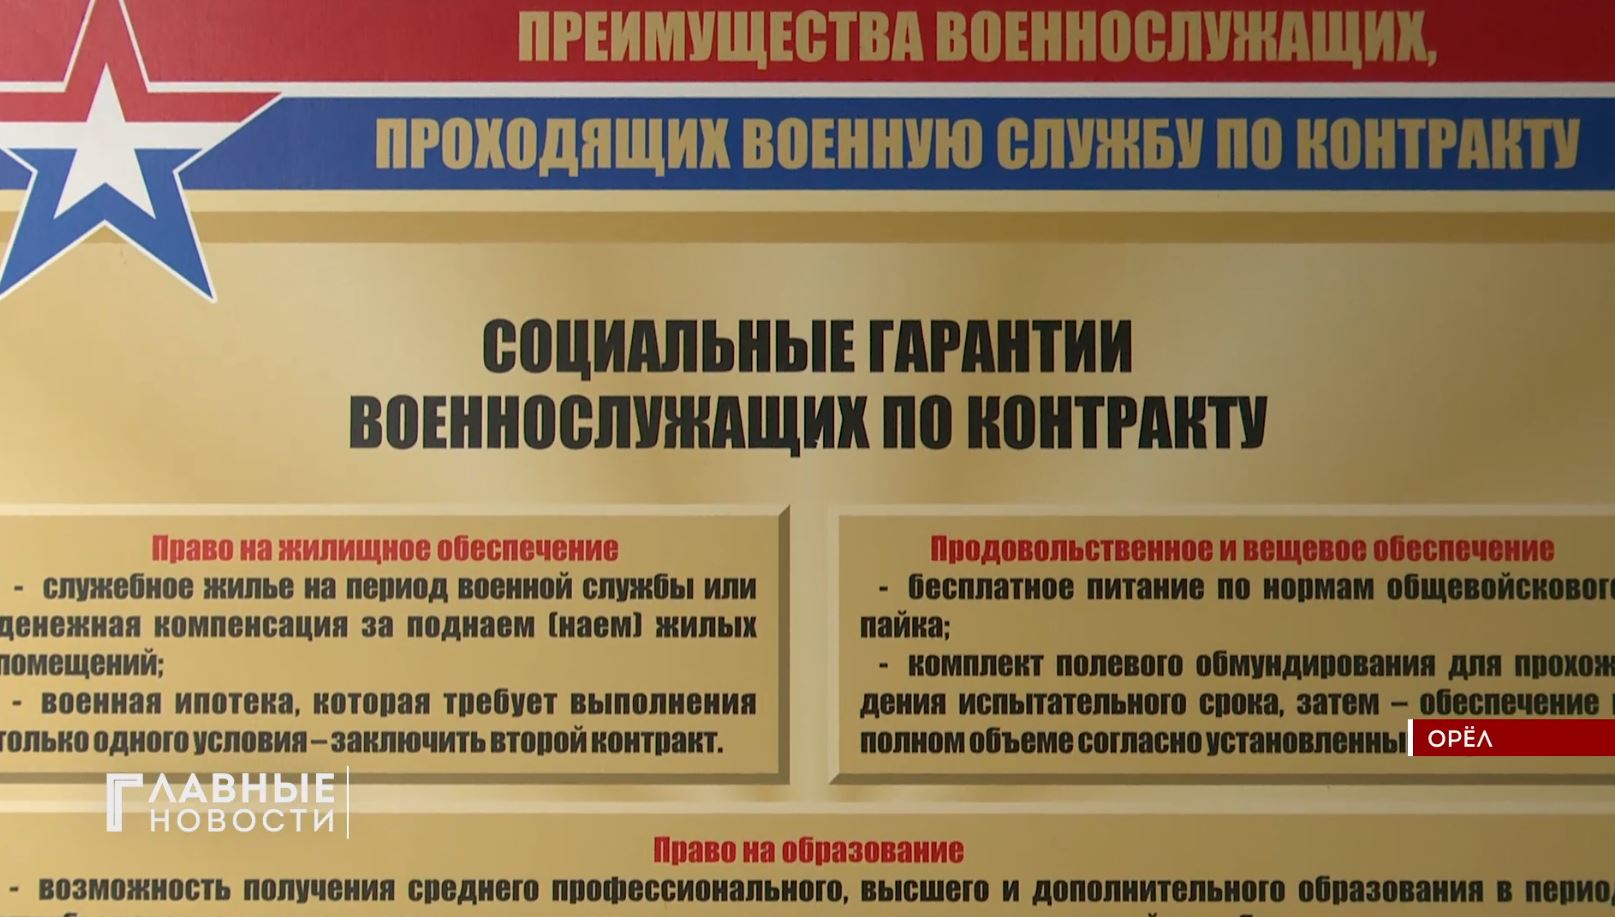 Ежедневно орловчане подписывают контракты на военную службу.